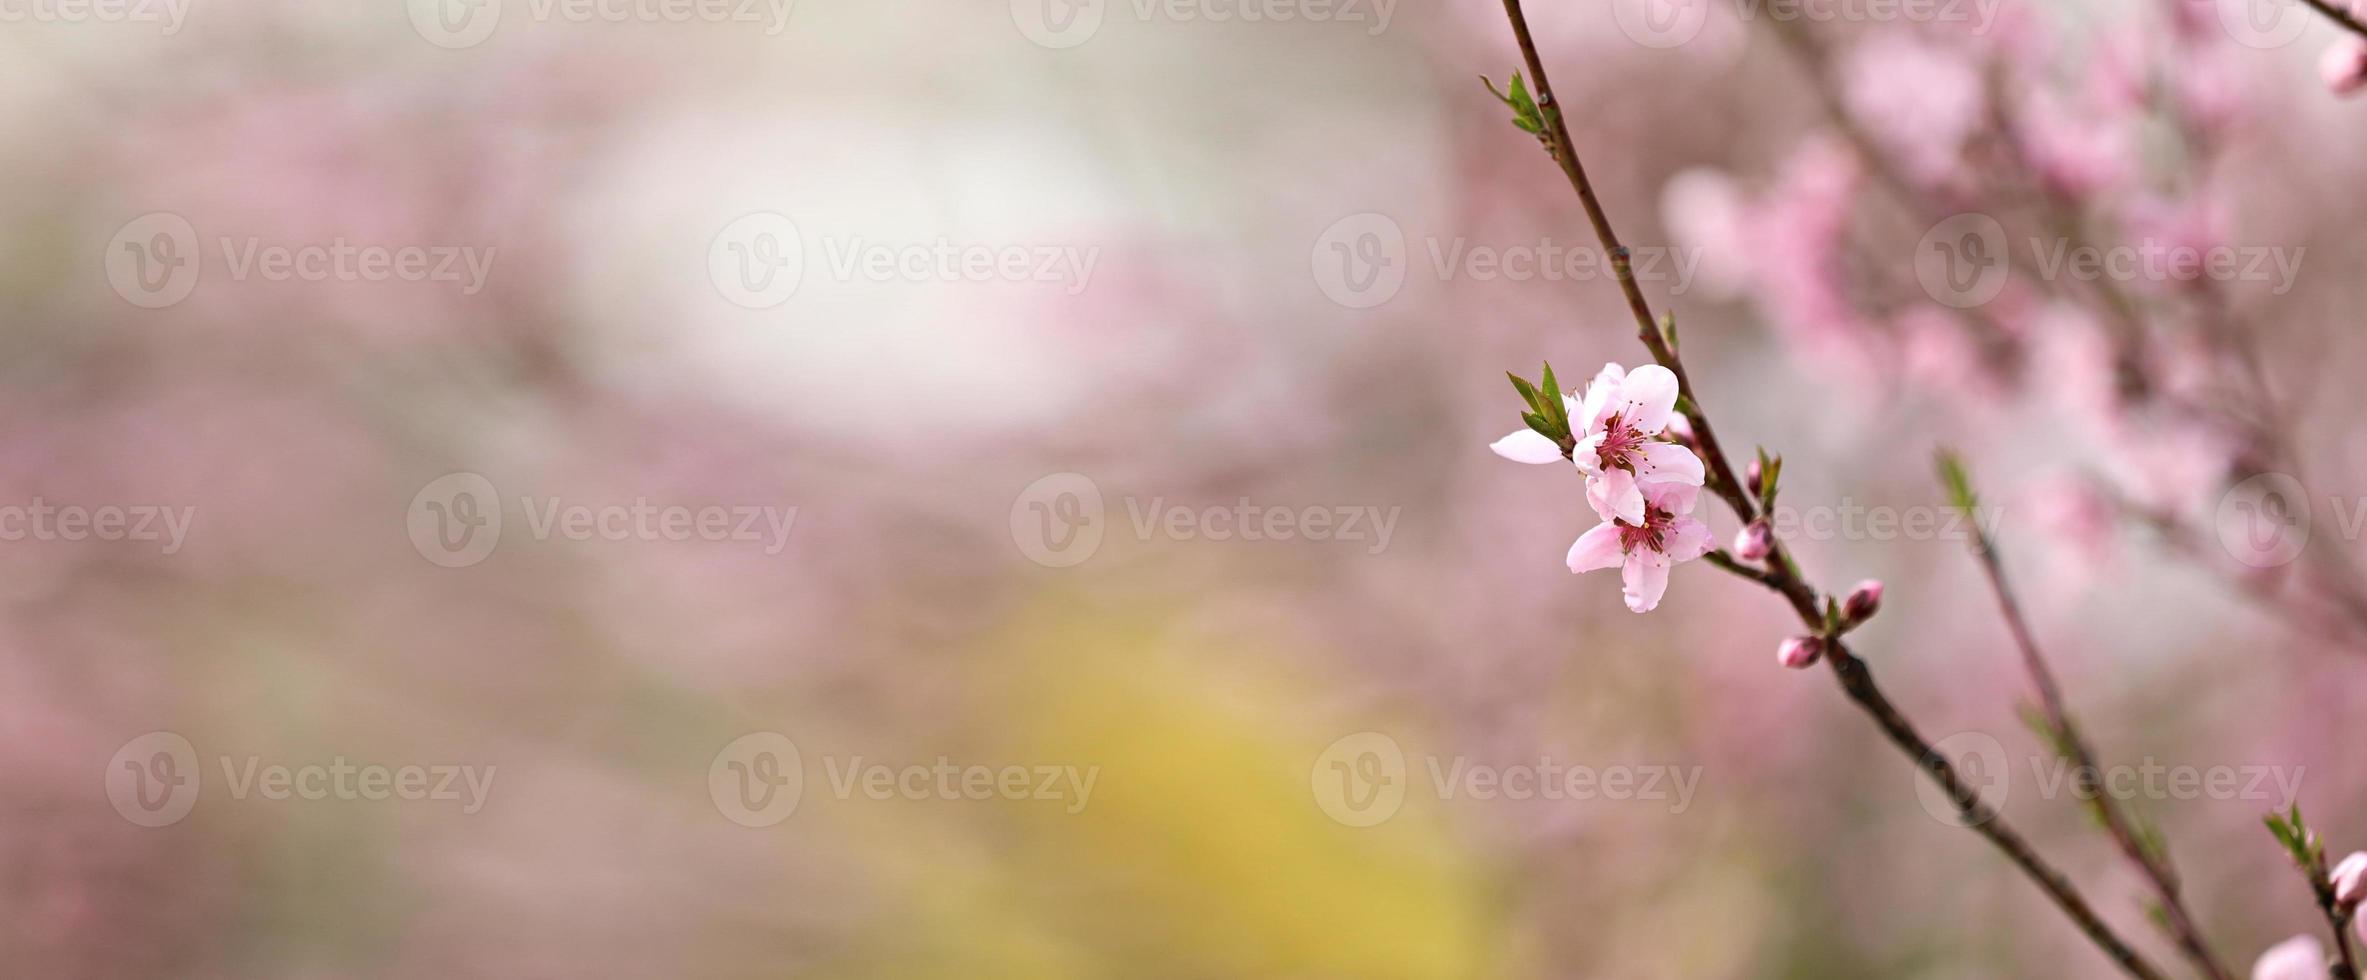 rosa pfirsichblüten blühen im frühjahr. schöne pfirsichblüten wiegen sich im wind. schöne leuchtend rosa blühende pfirsichblüten an den zweigen. Nahansicht foto